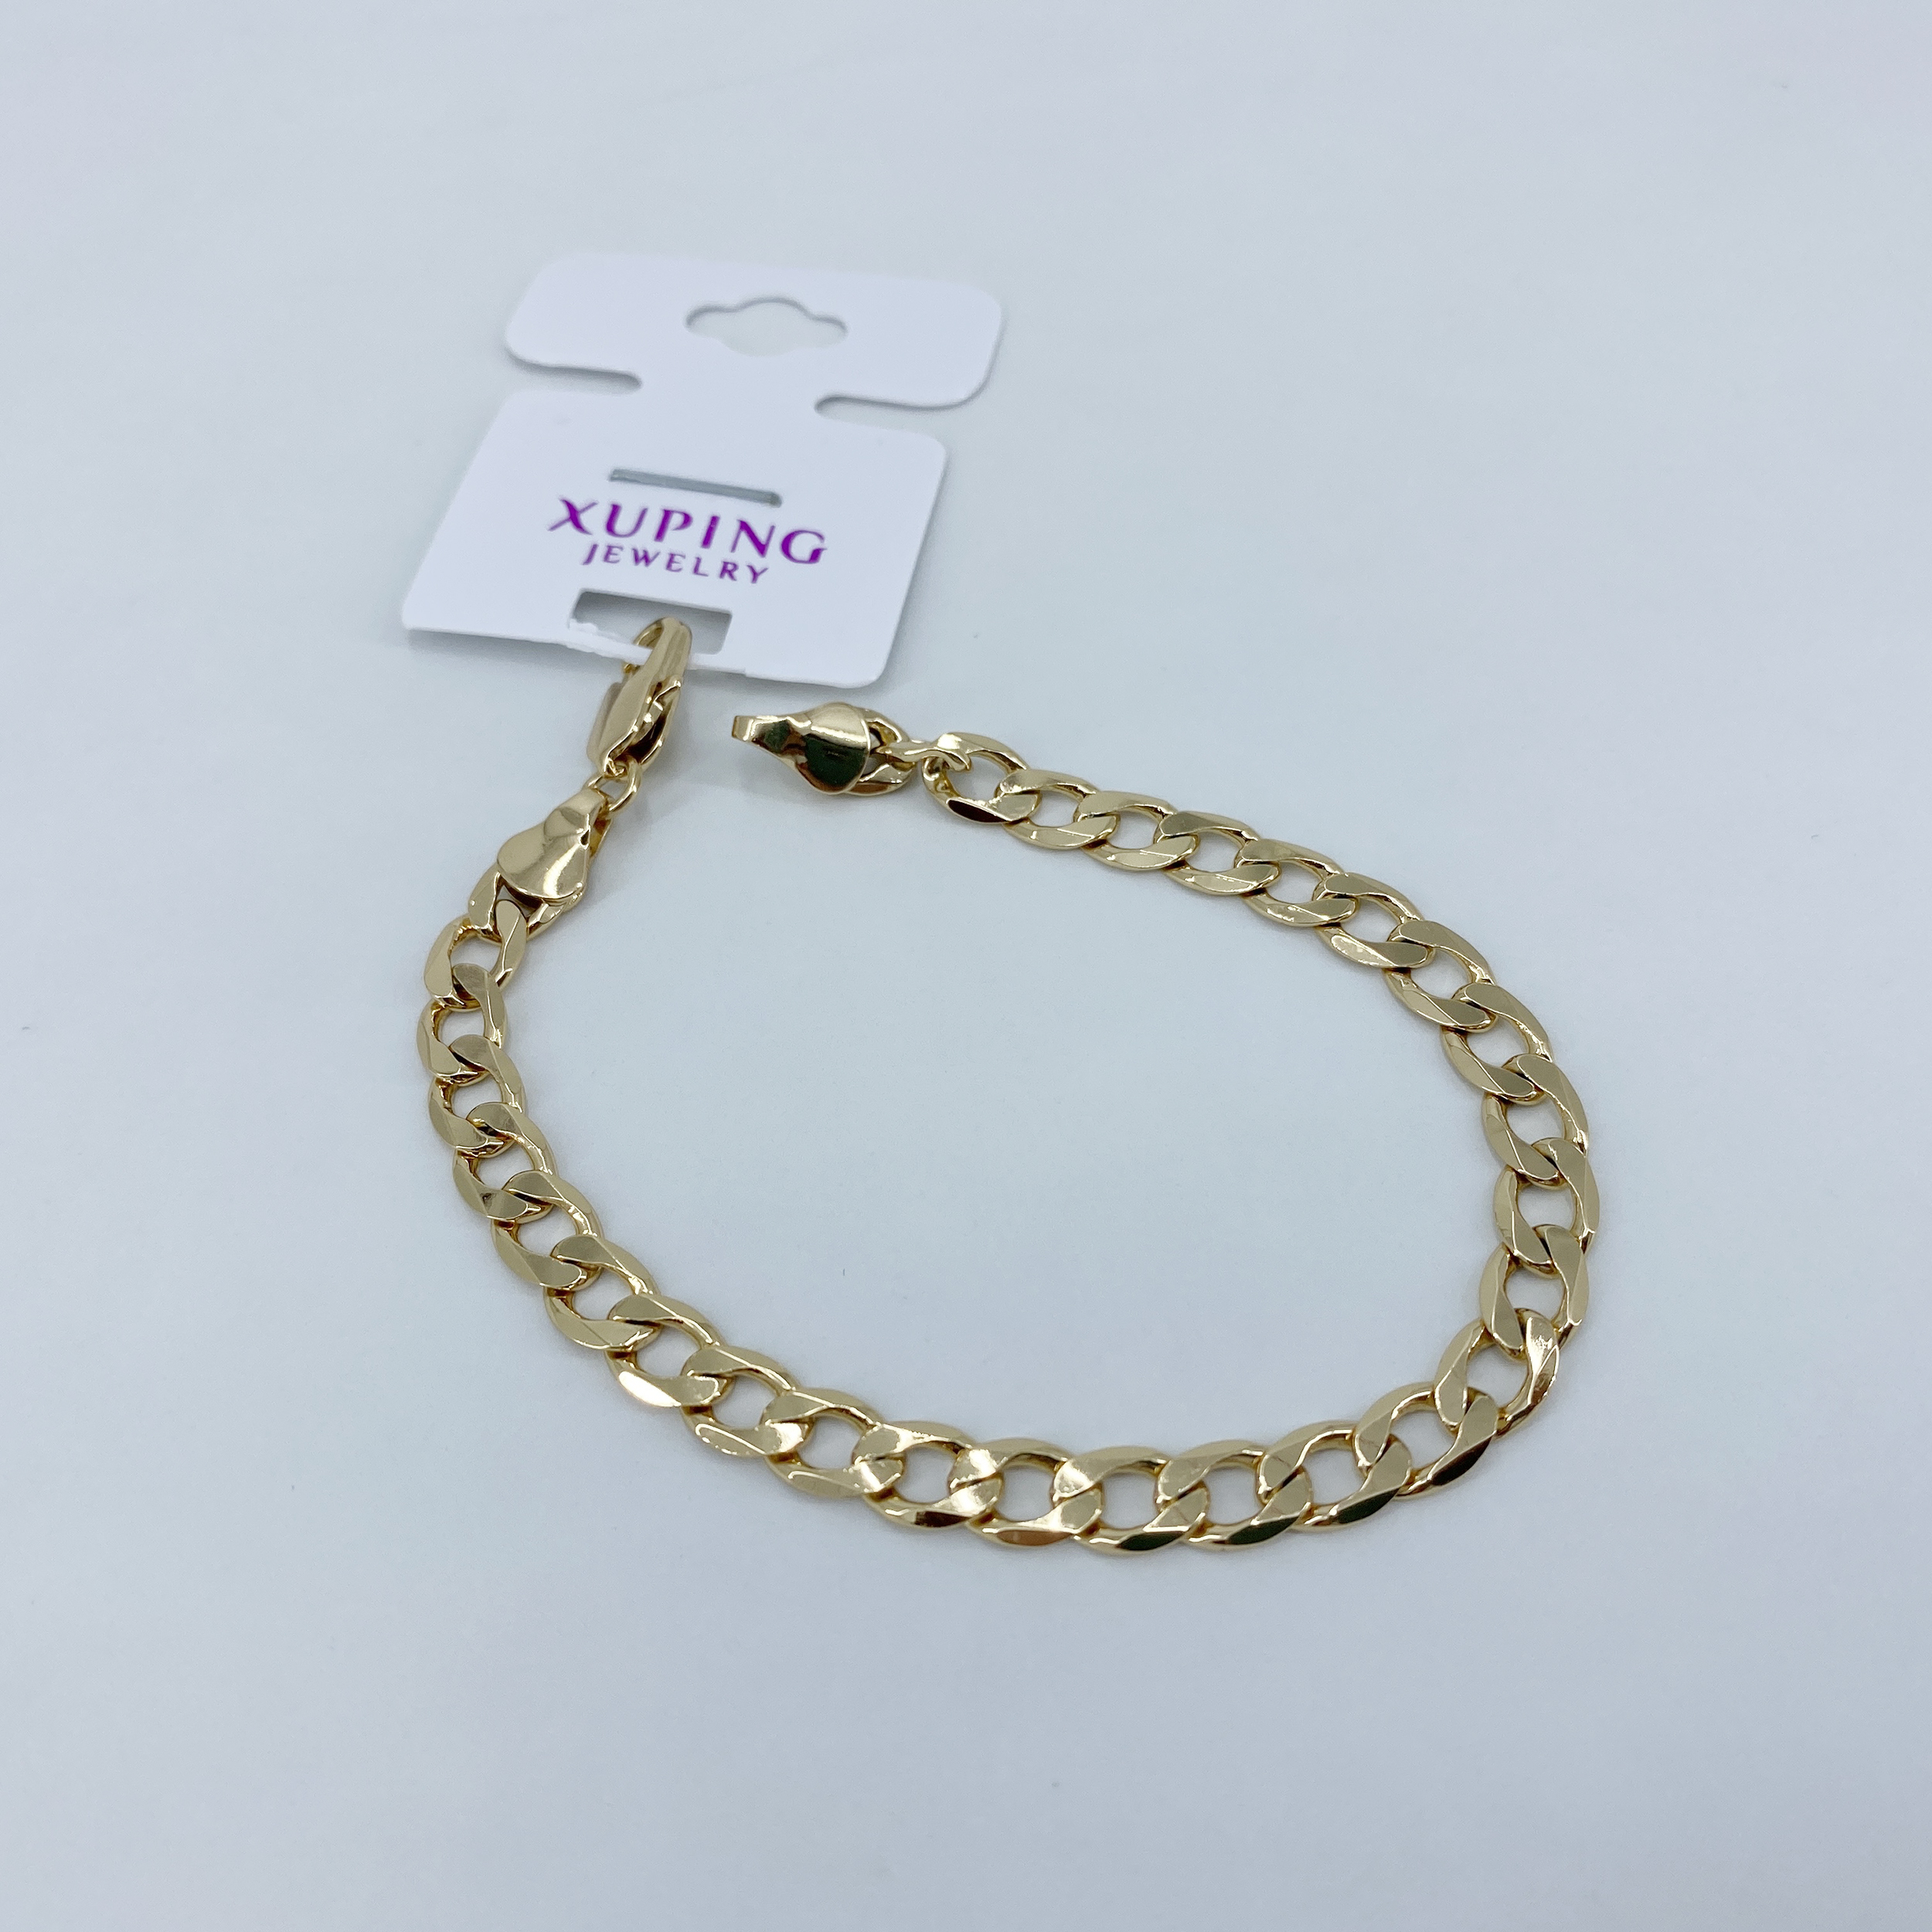 دستبند زنانه ژوپینگ کد B3025 -  - 2